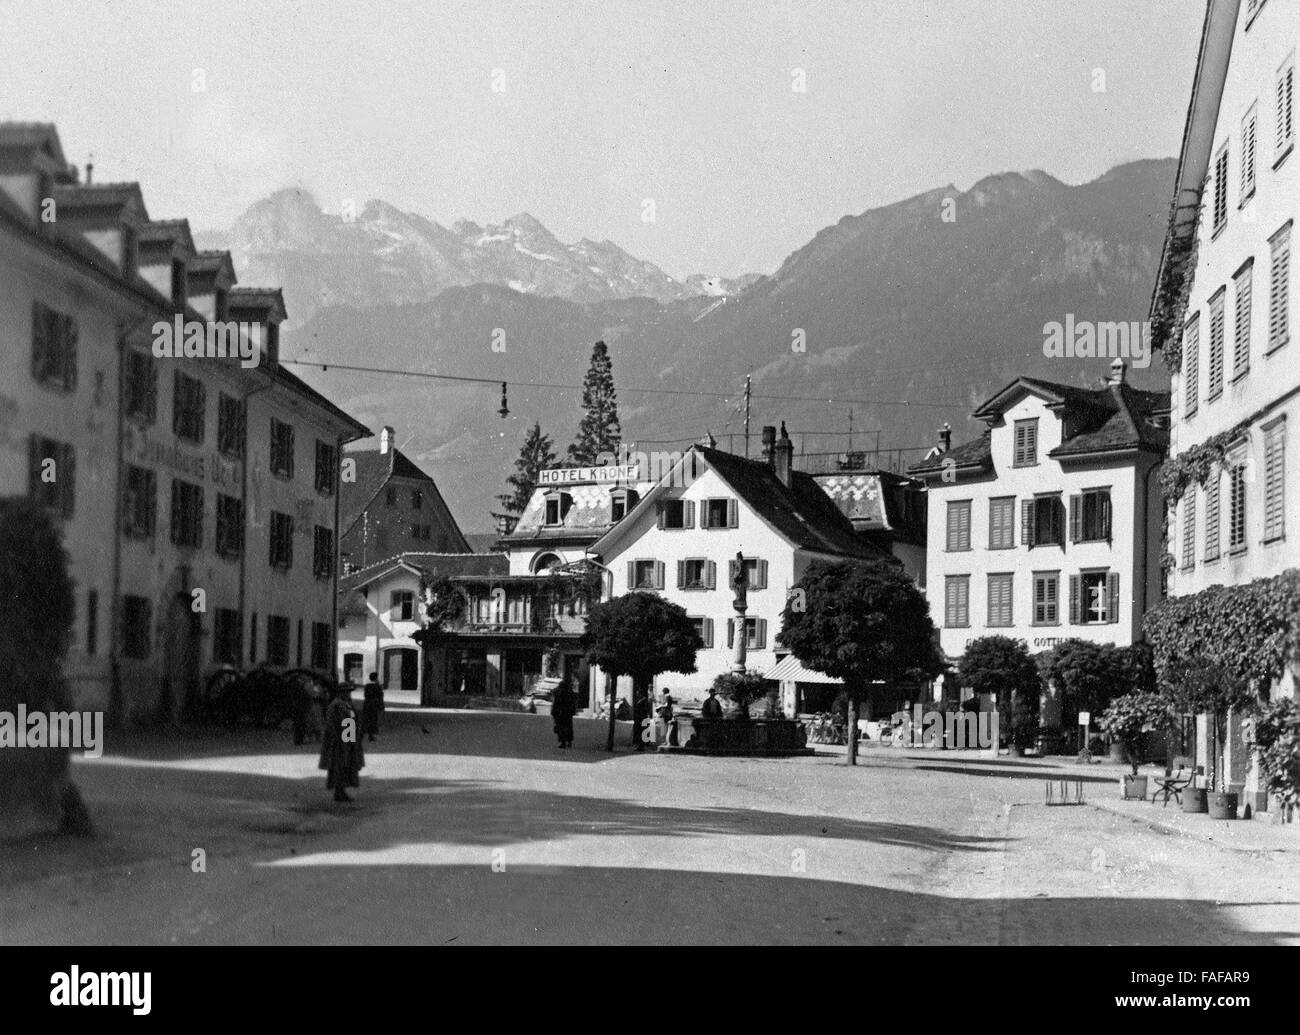 Straße und Platz im Kanton Uri à Altdorf, Schweiz 1930er Jahre. Rue et square à Altdorf, Suisse canton d'Uri en 1930. Banque D'Images